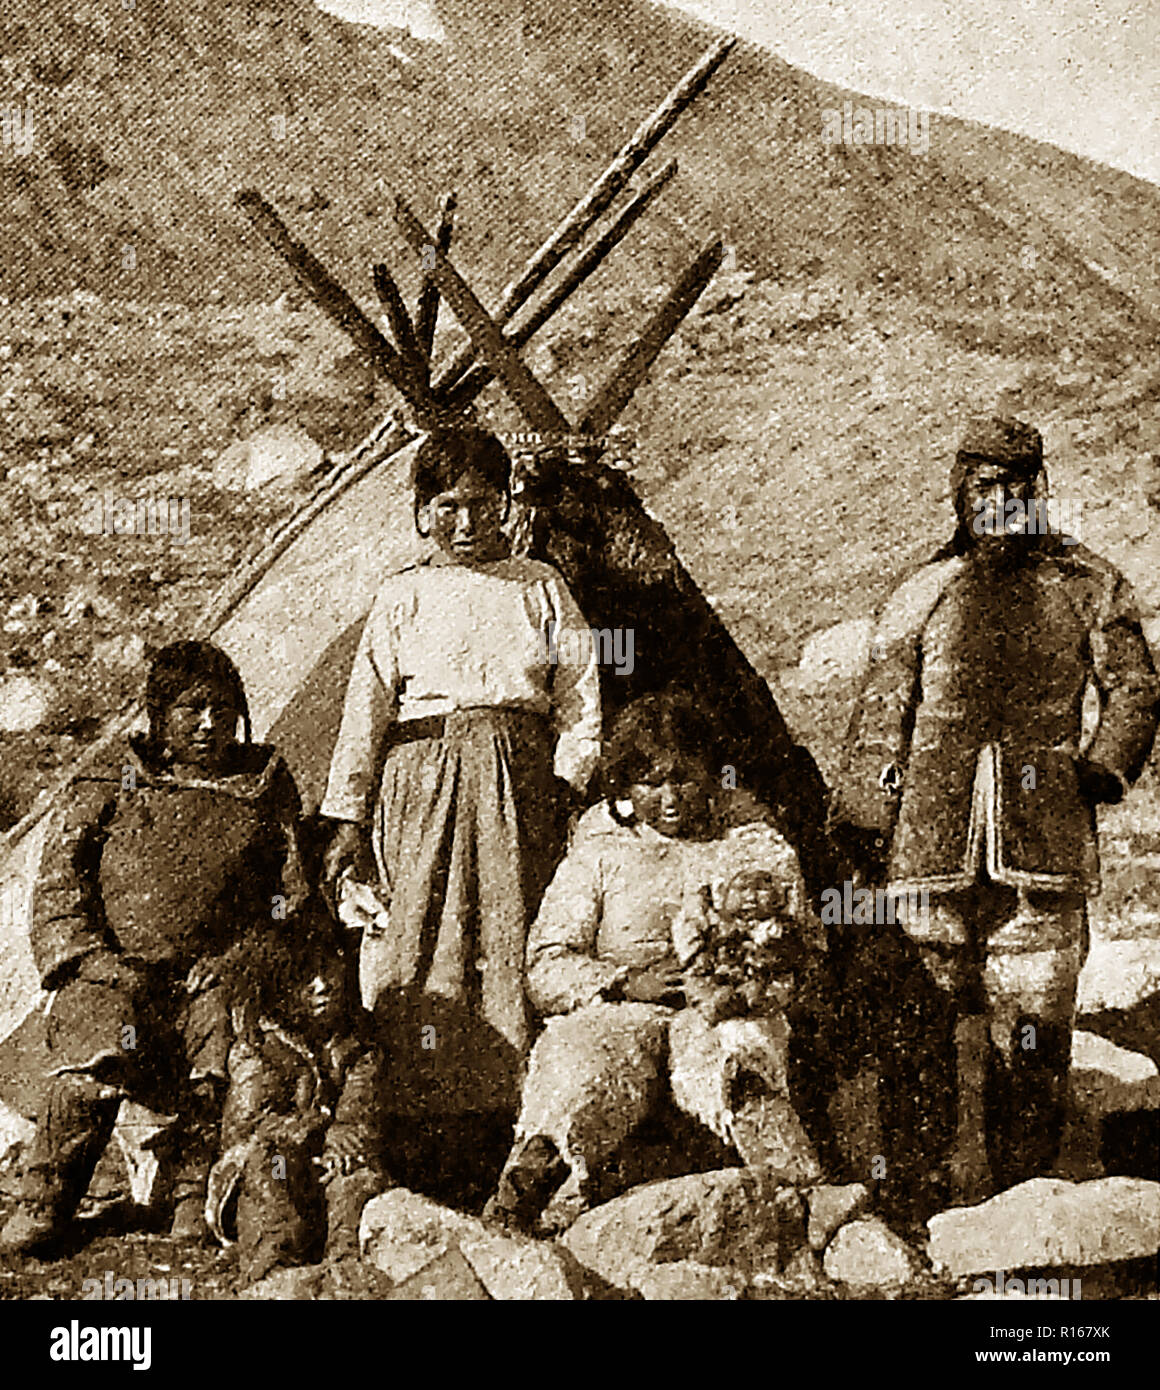 Un esquimal de Groenlandia (inuit de Groenlandia) con su familia tepee home (circa 1940) Foto de stock